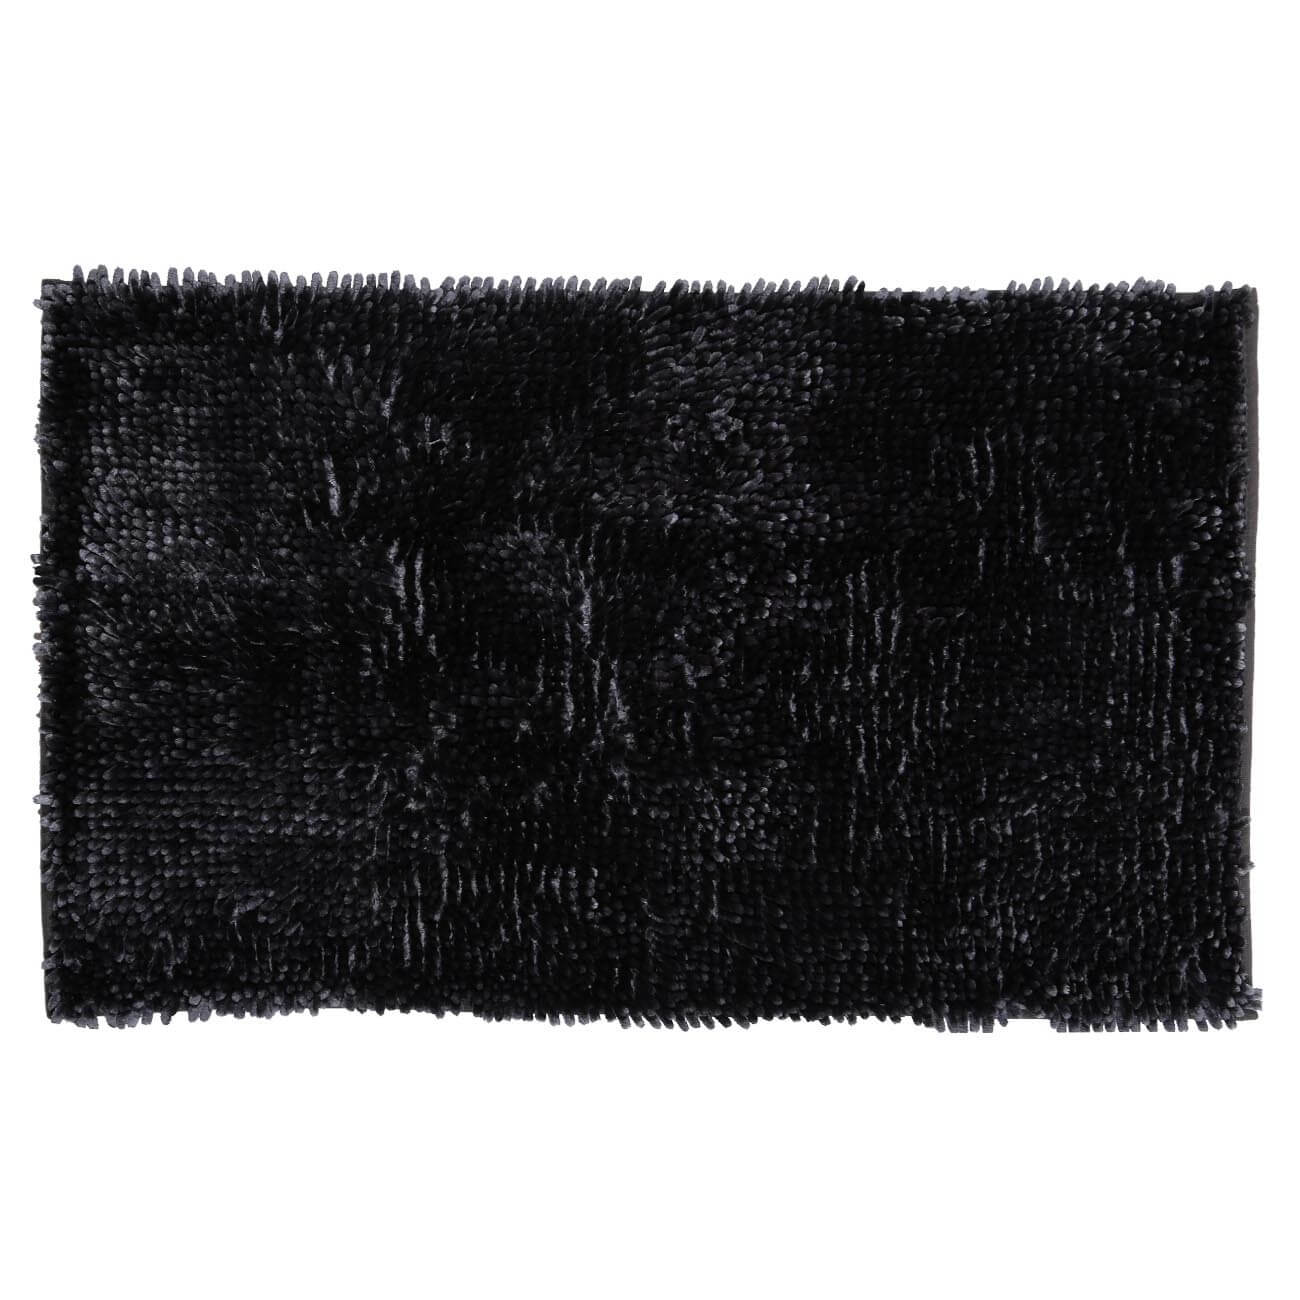 Коврик, 50х80 см, противоскользящий, полиэстер, темно-серый, Fluffy коврик флексика алфавит цифры 45448